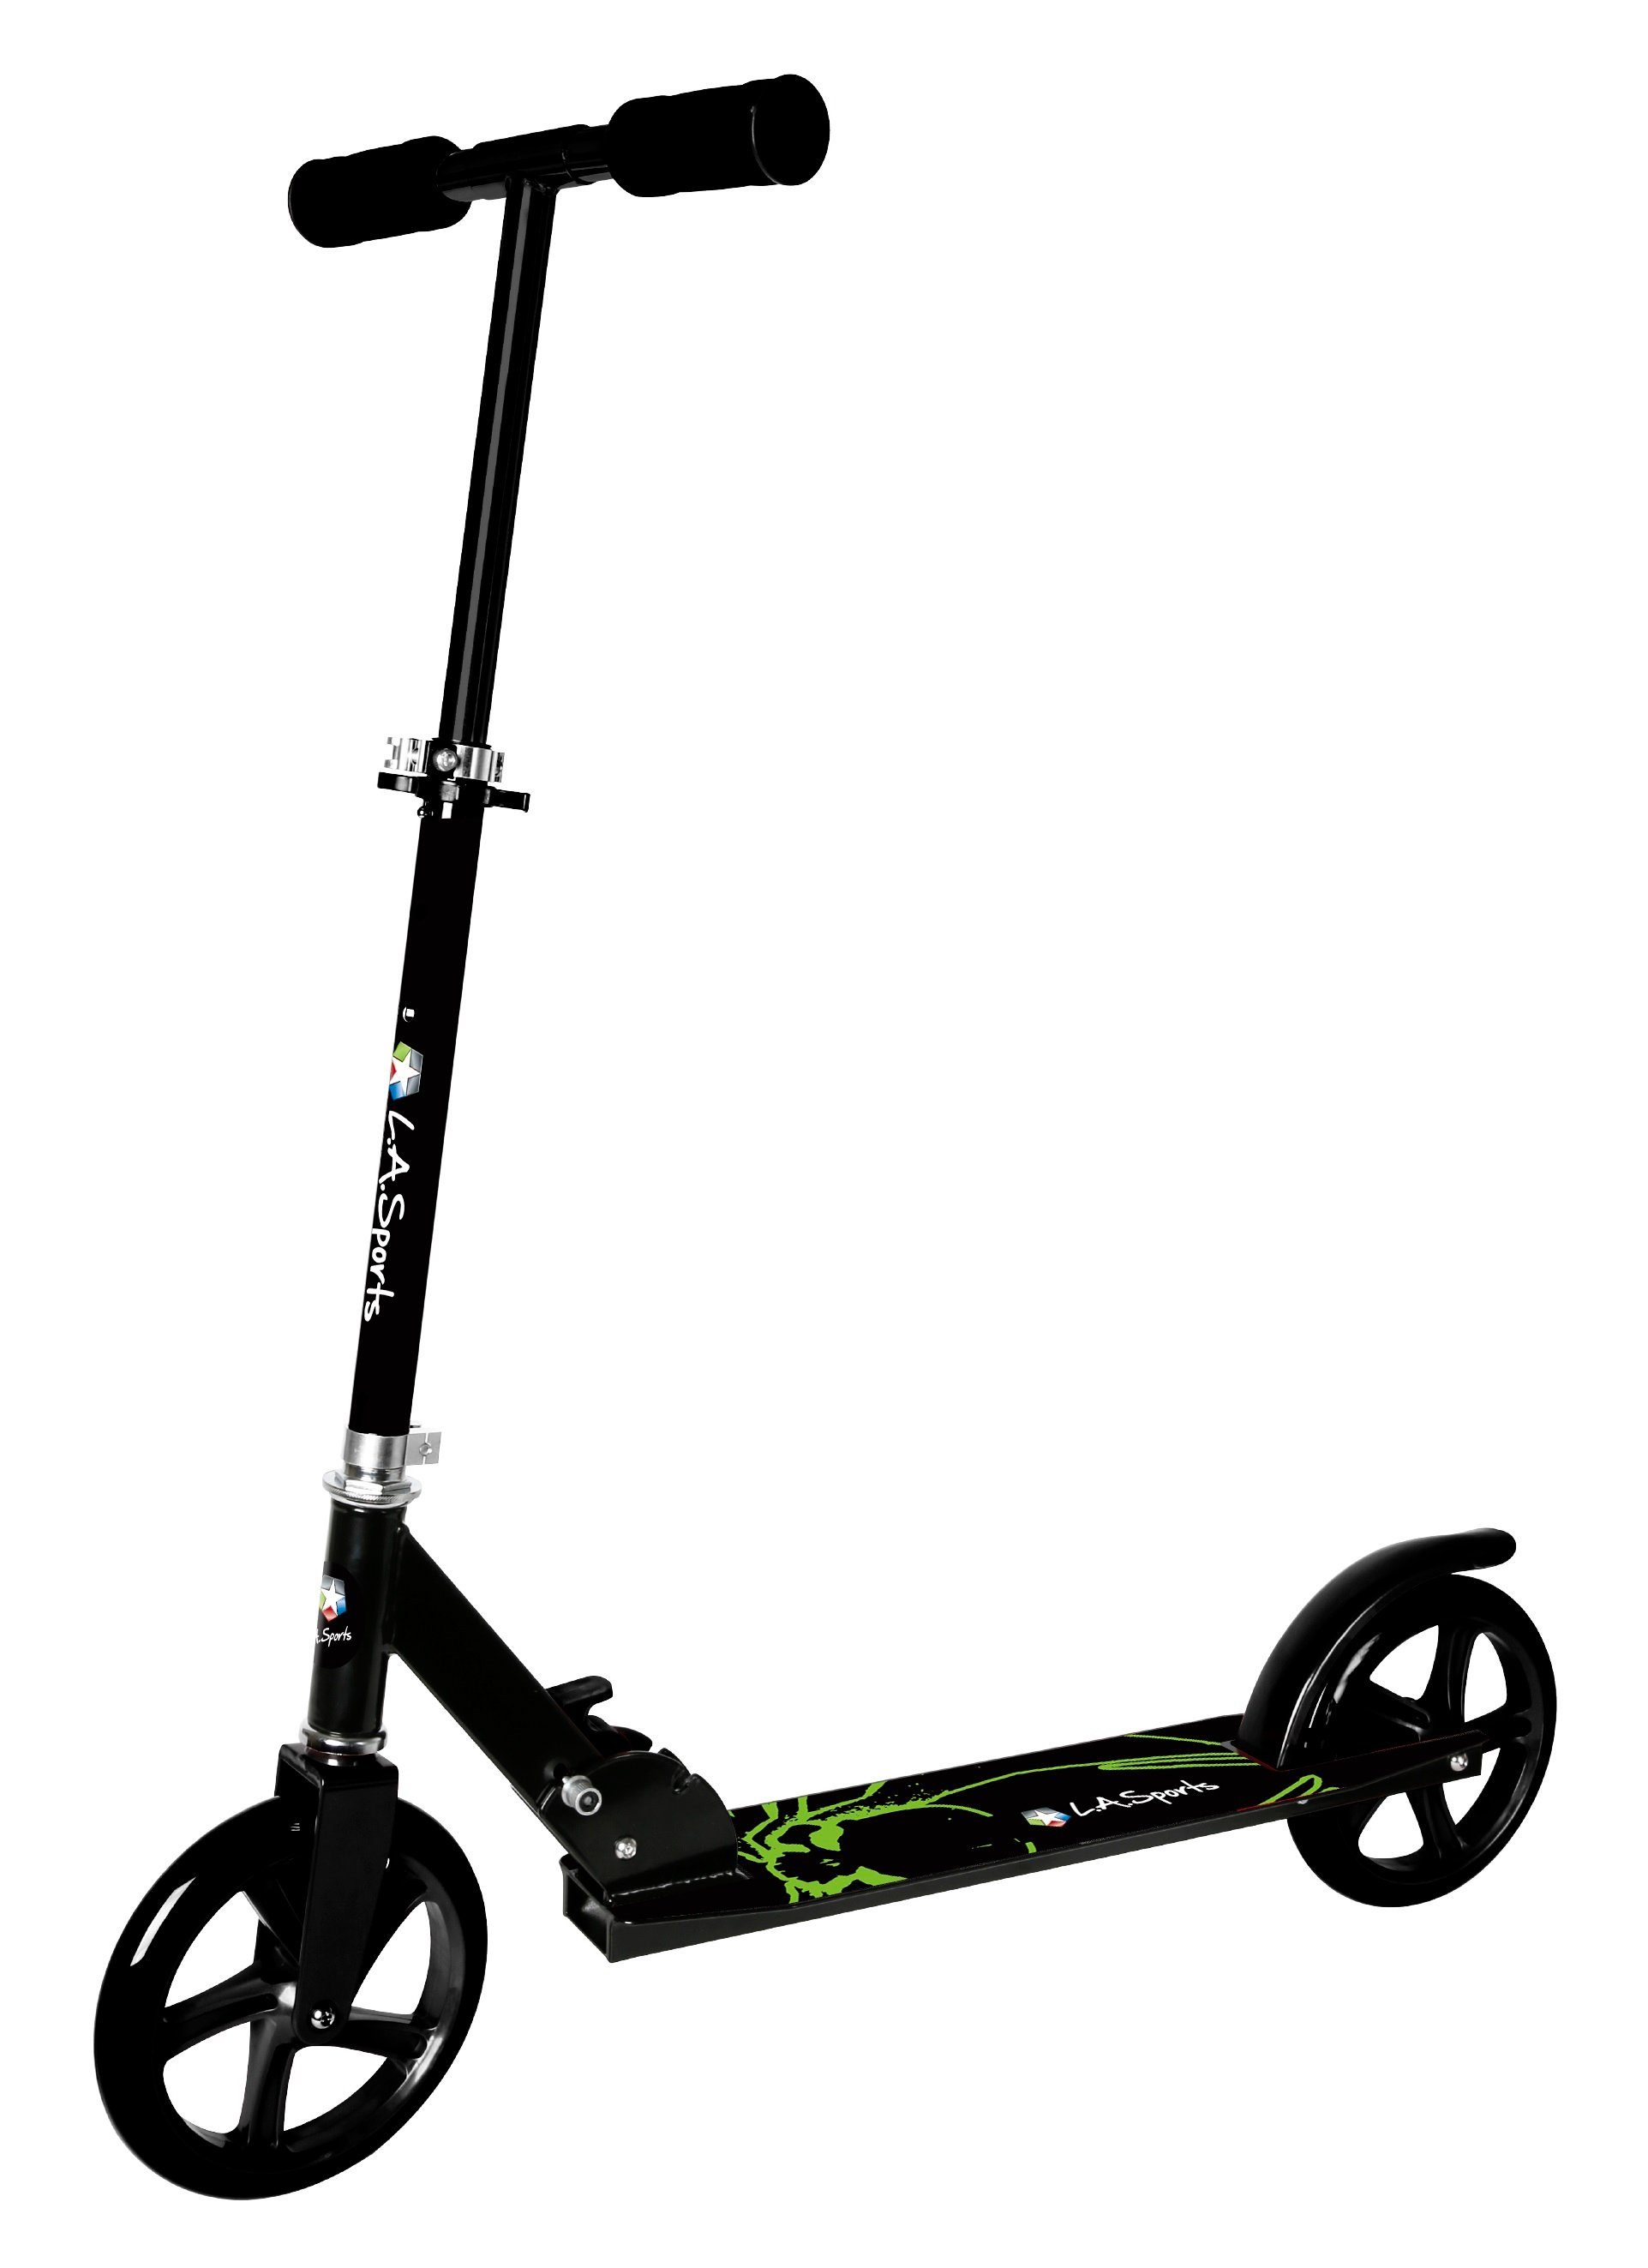 L.A. Sports Cityroller ALU-Scooter Onyx XL Big Wheels ab 6 Jahren, City- Roller Farbe grün - schwarz, faltbar, Höhe verstellbar für Kinder,  Jugendliche & Erwachsene, große XL Räder 200 mm